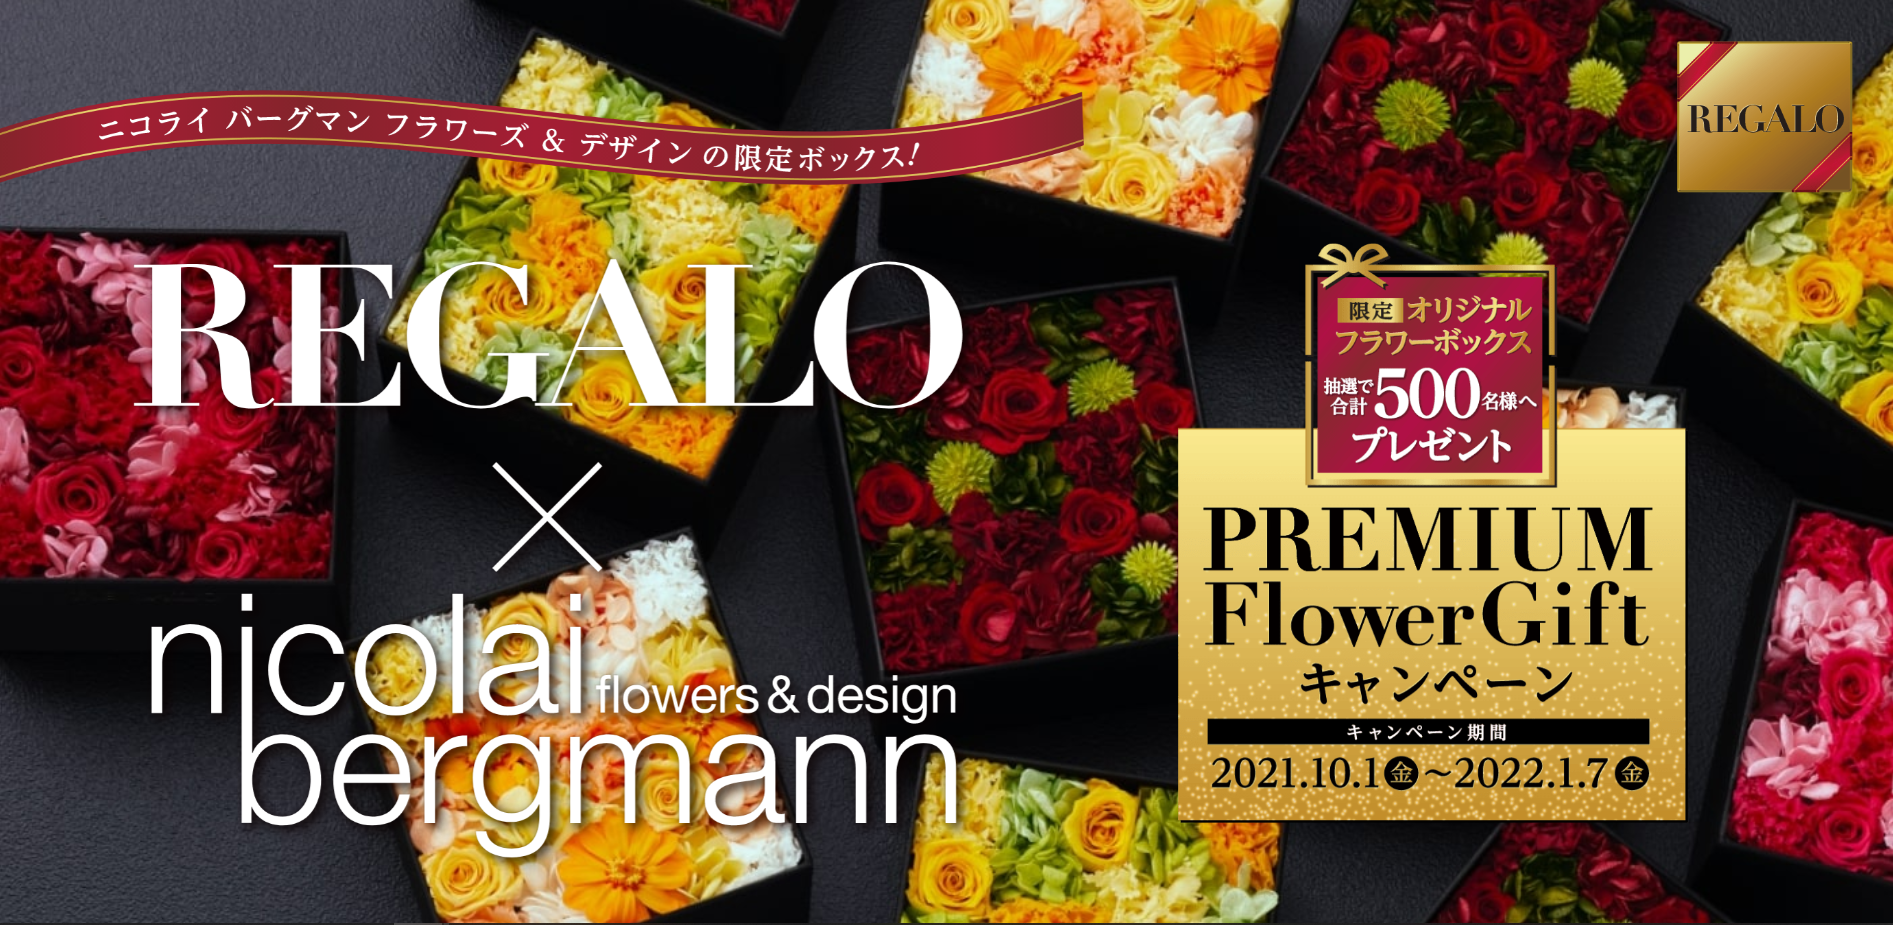 REGALOのキャンペーンで、Nicolai Bergmann Flowers & Designのフラワーボックスをプレゼント